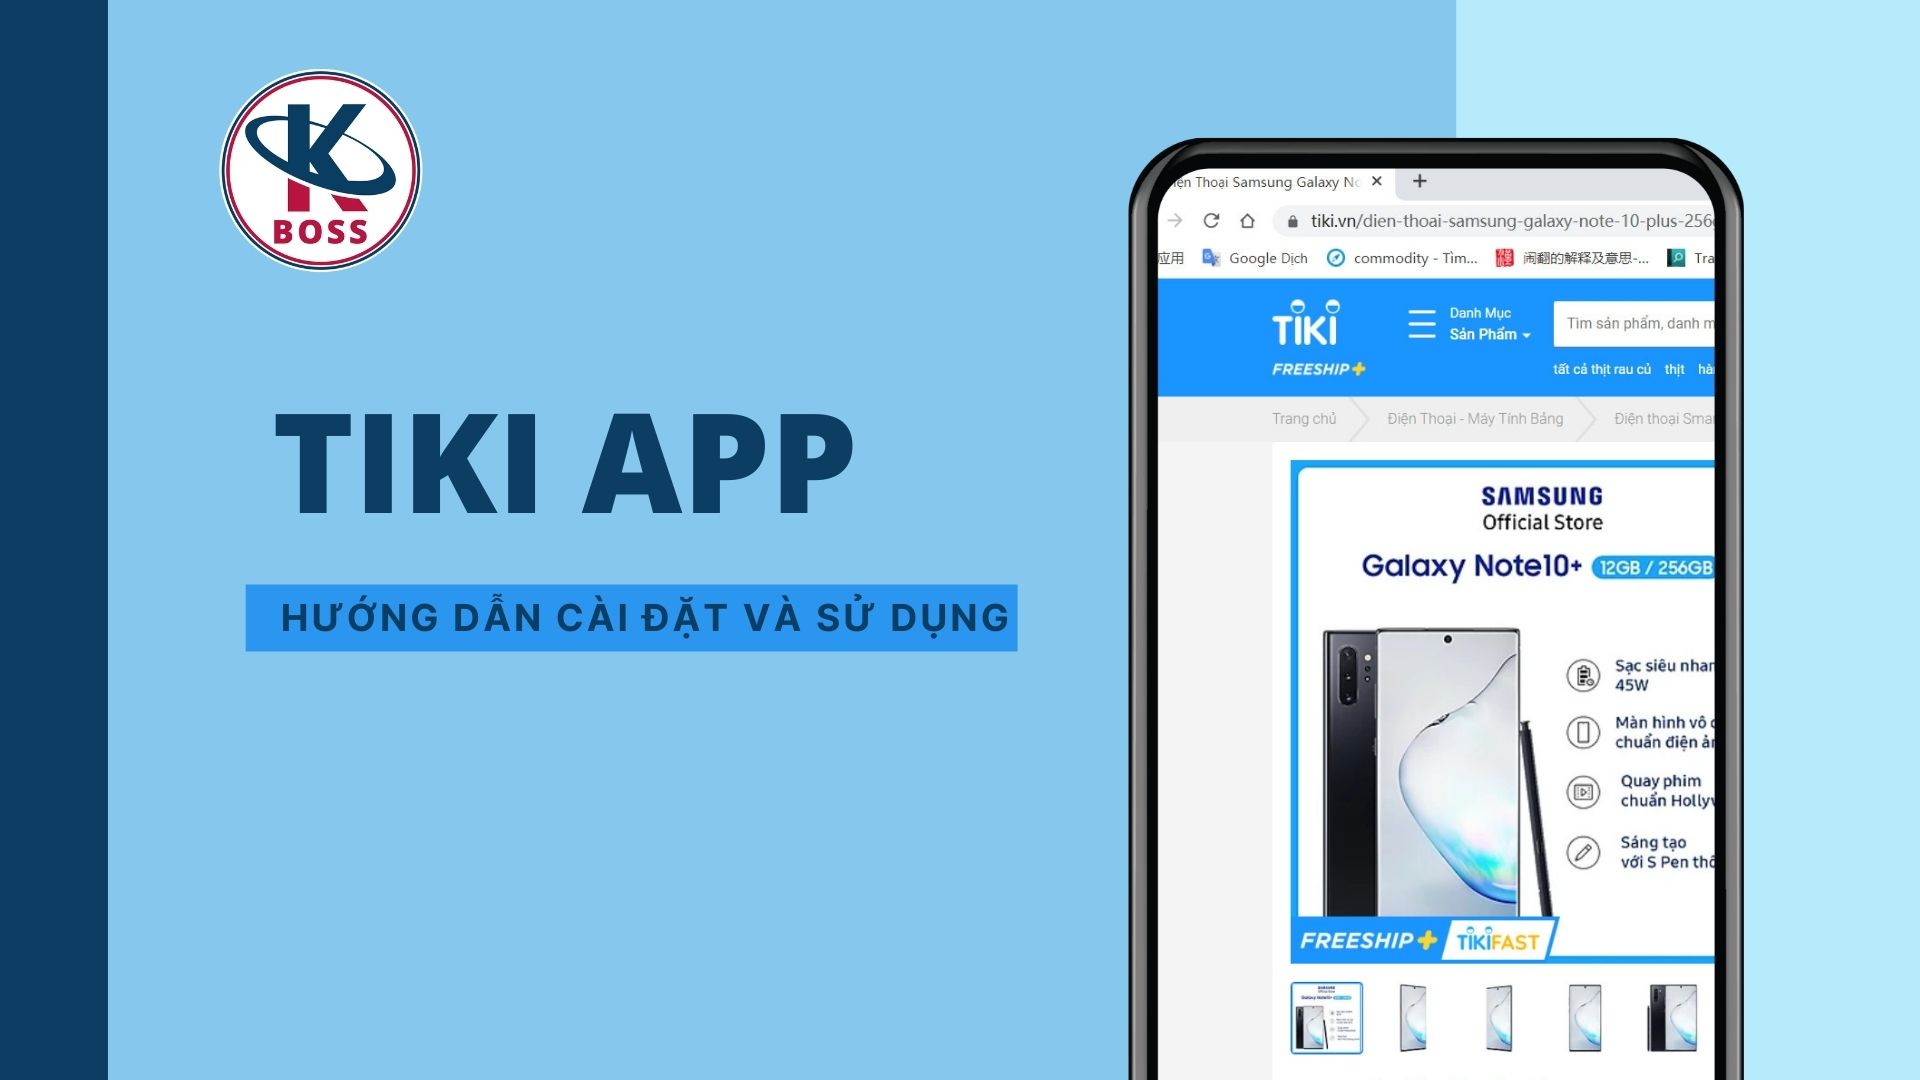 Tiki App là gì? Hướng dẫn cài đặt và sử dụng Tiki App